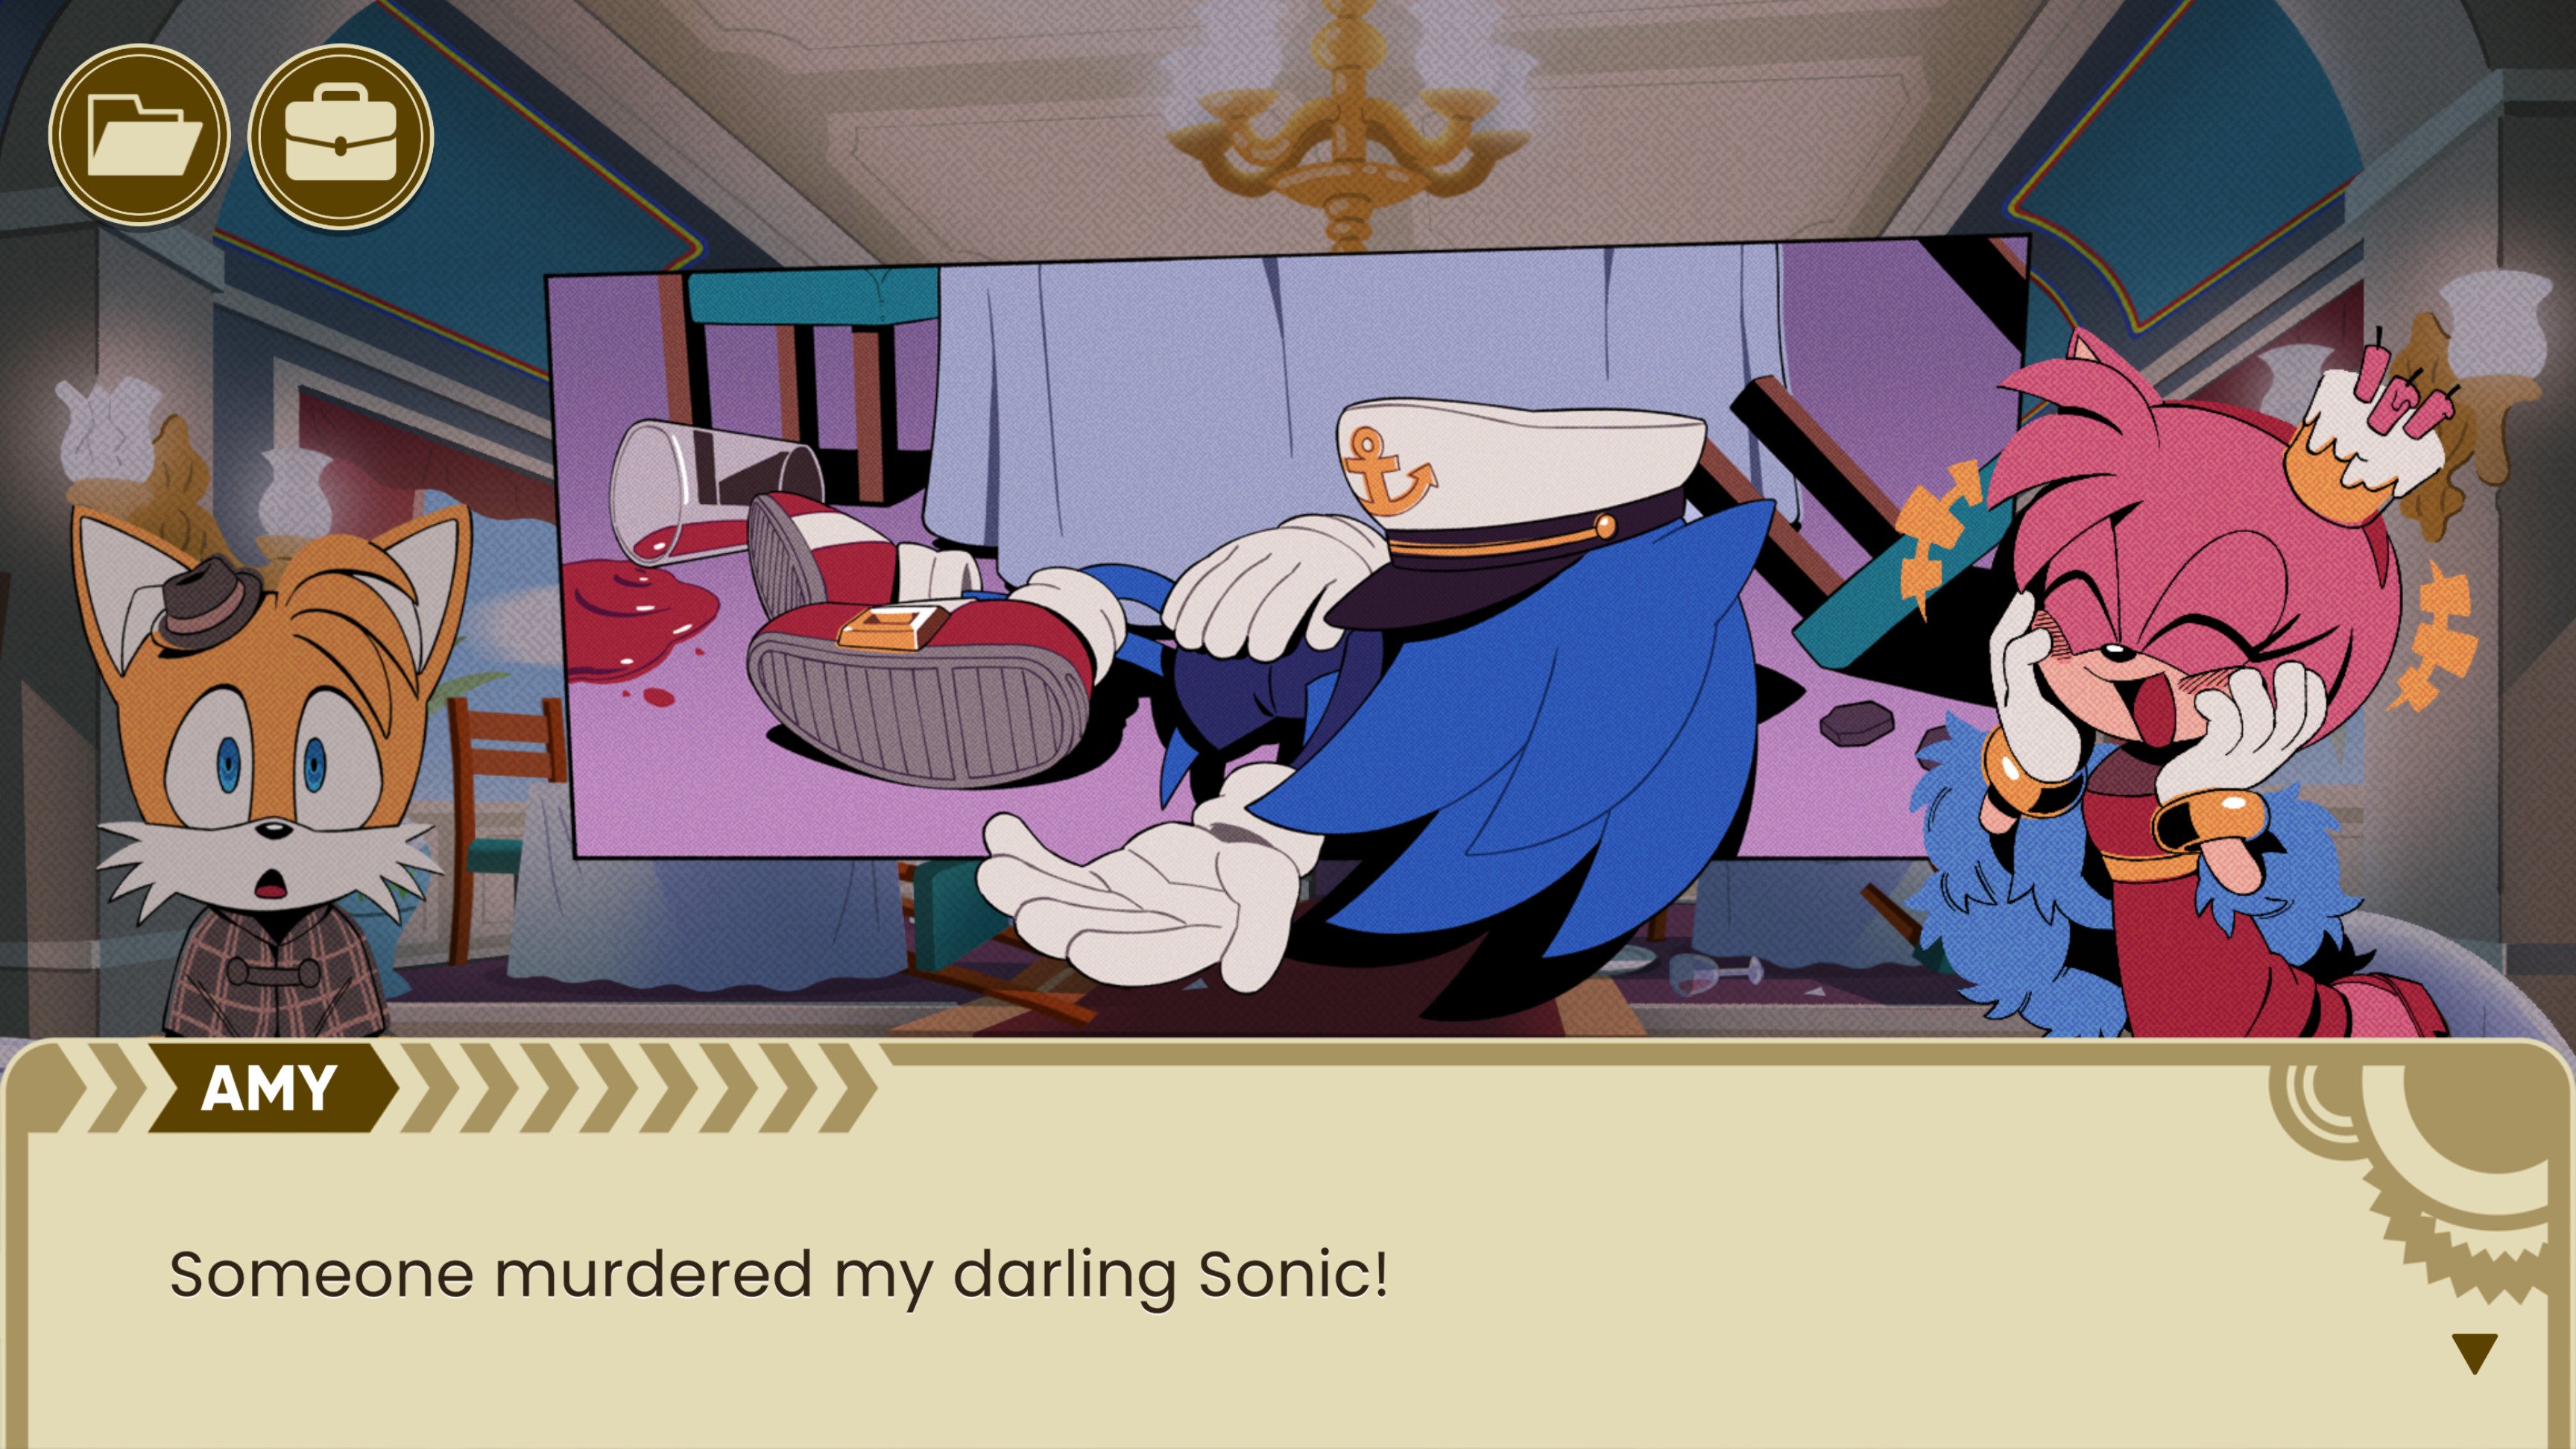 Visual novel gratuita The Murder of Sonic the Hedgehog chega na Steam -  Estúdio Homies